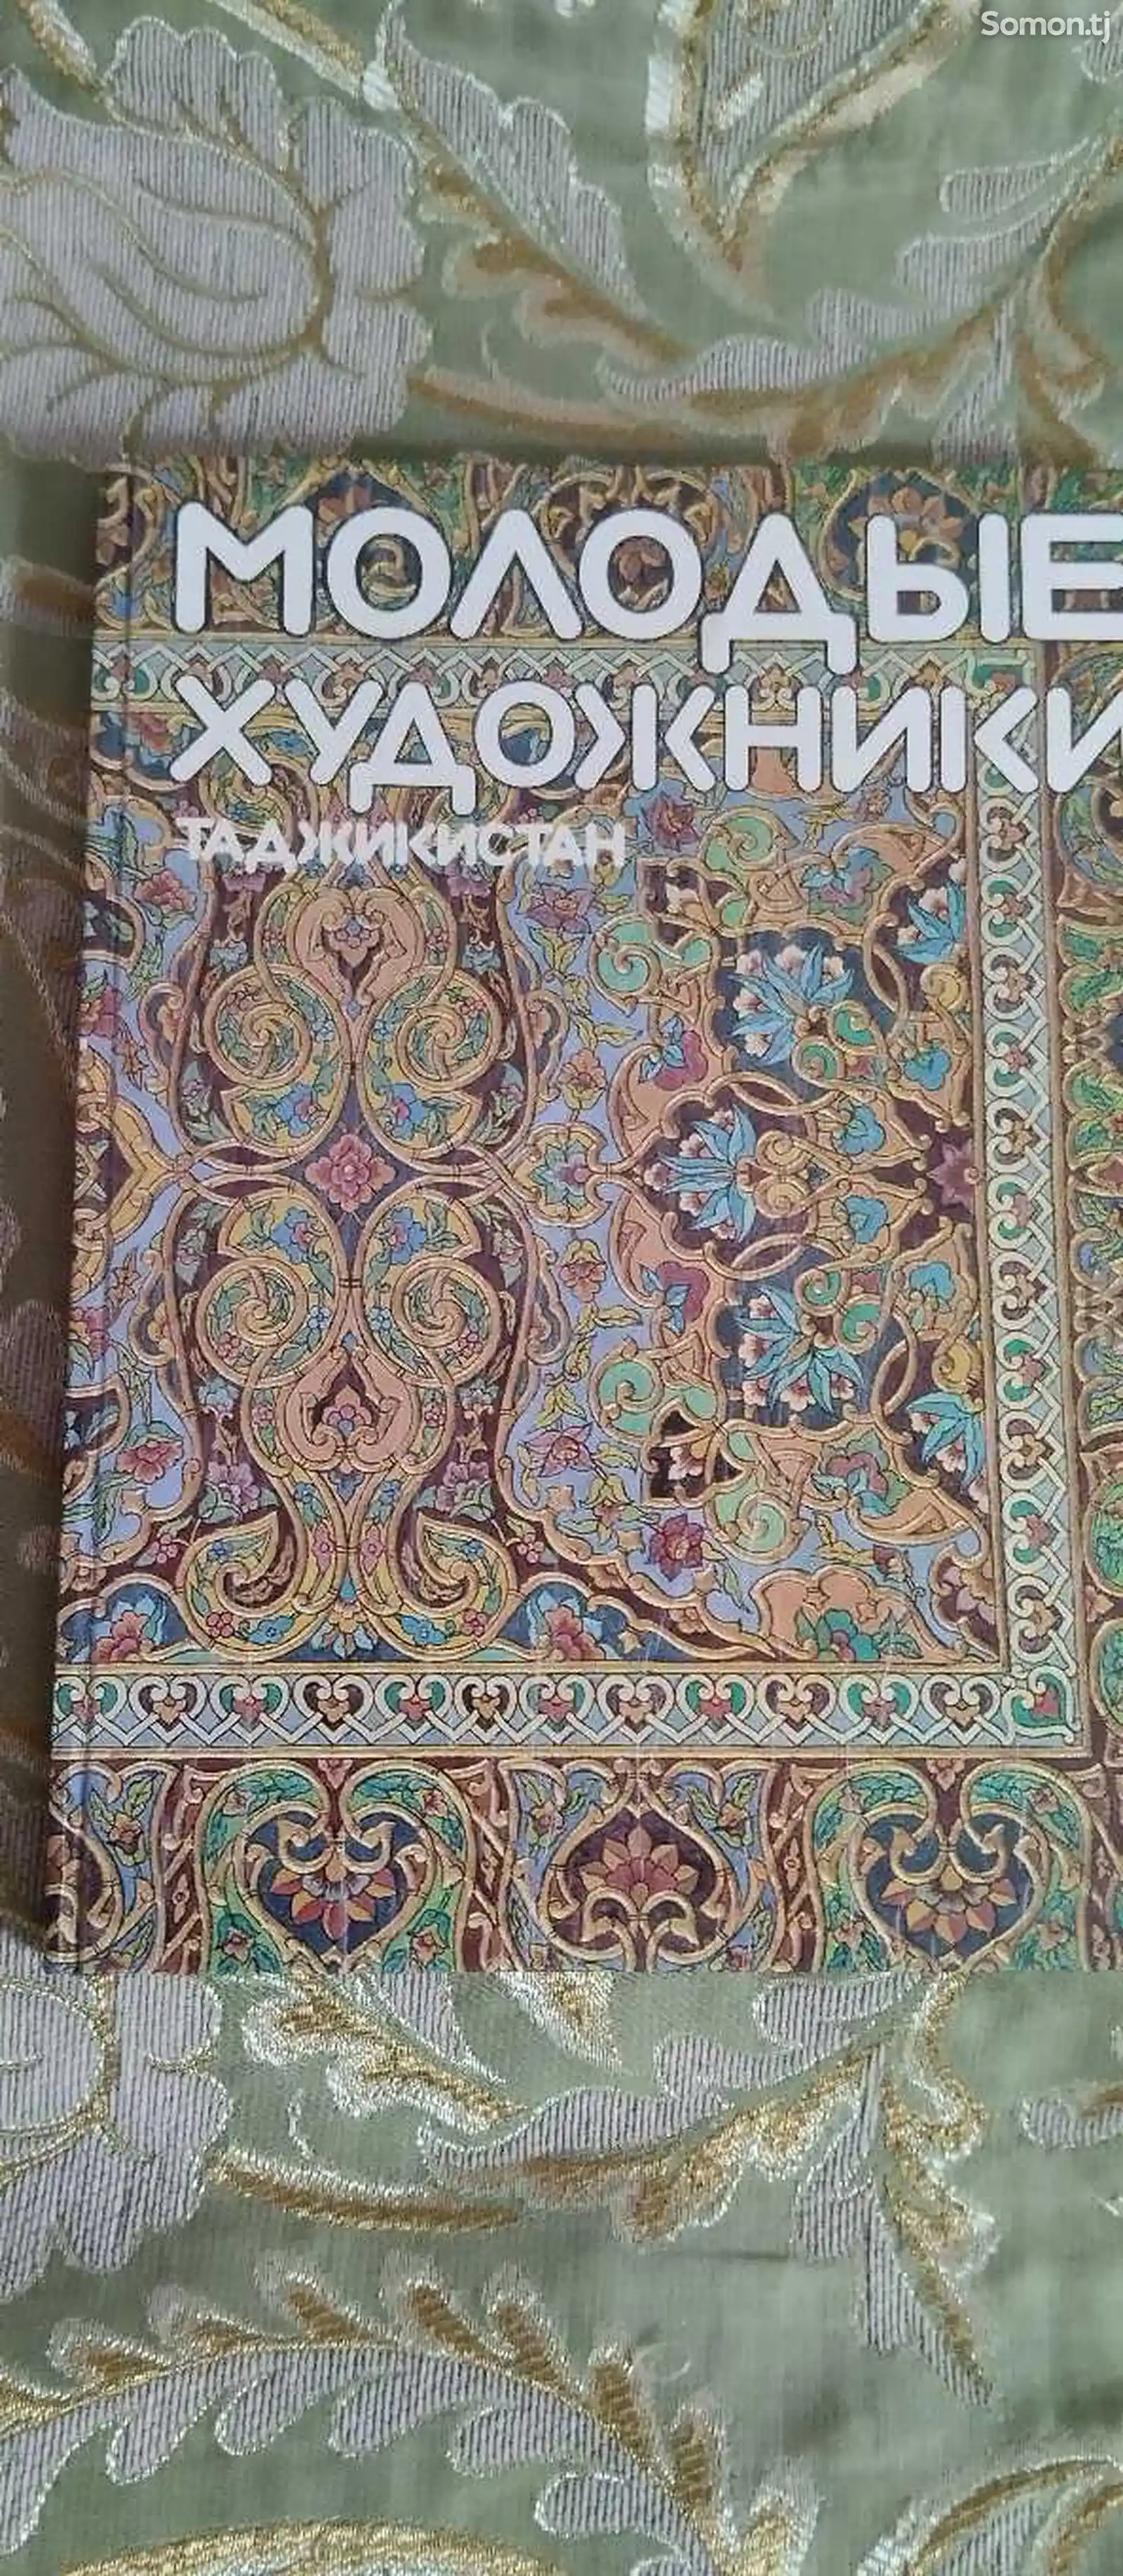 Книга Молодые художники, Таджикистан